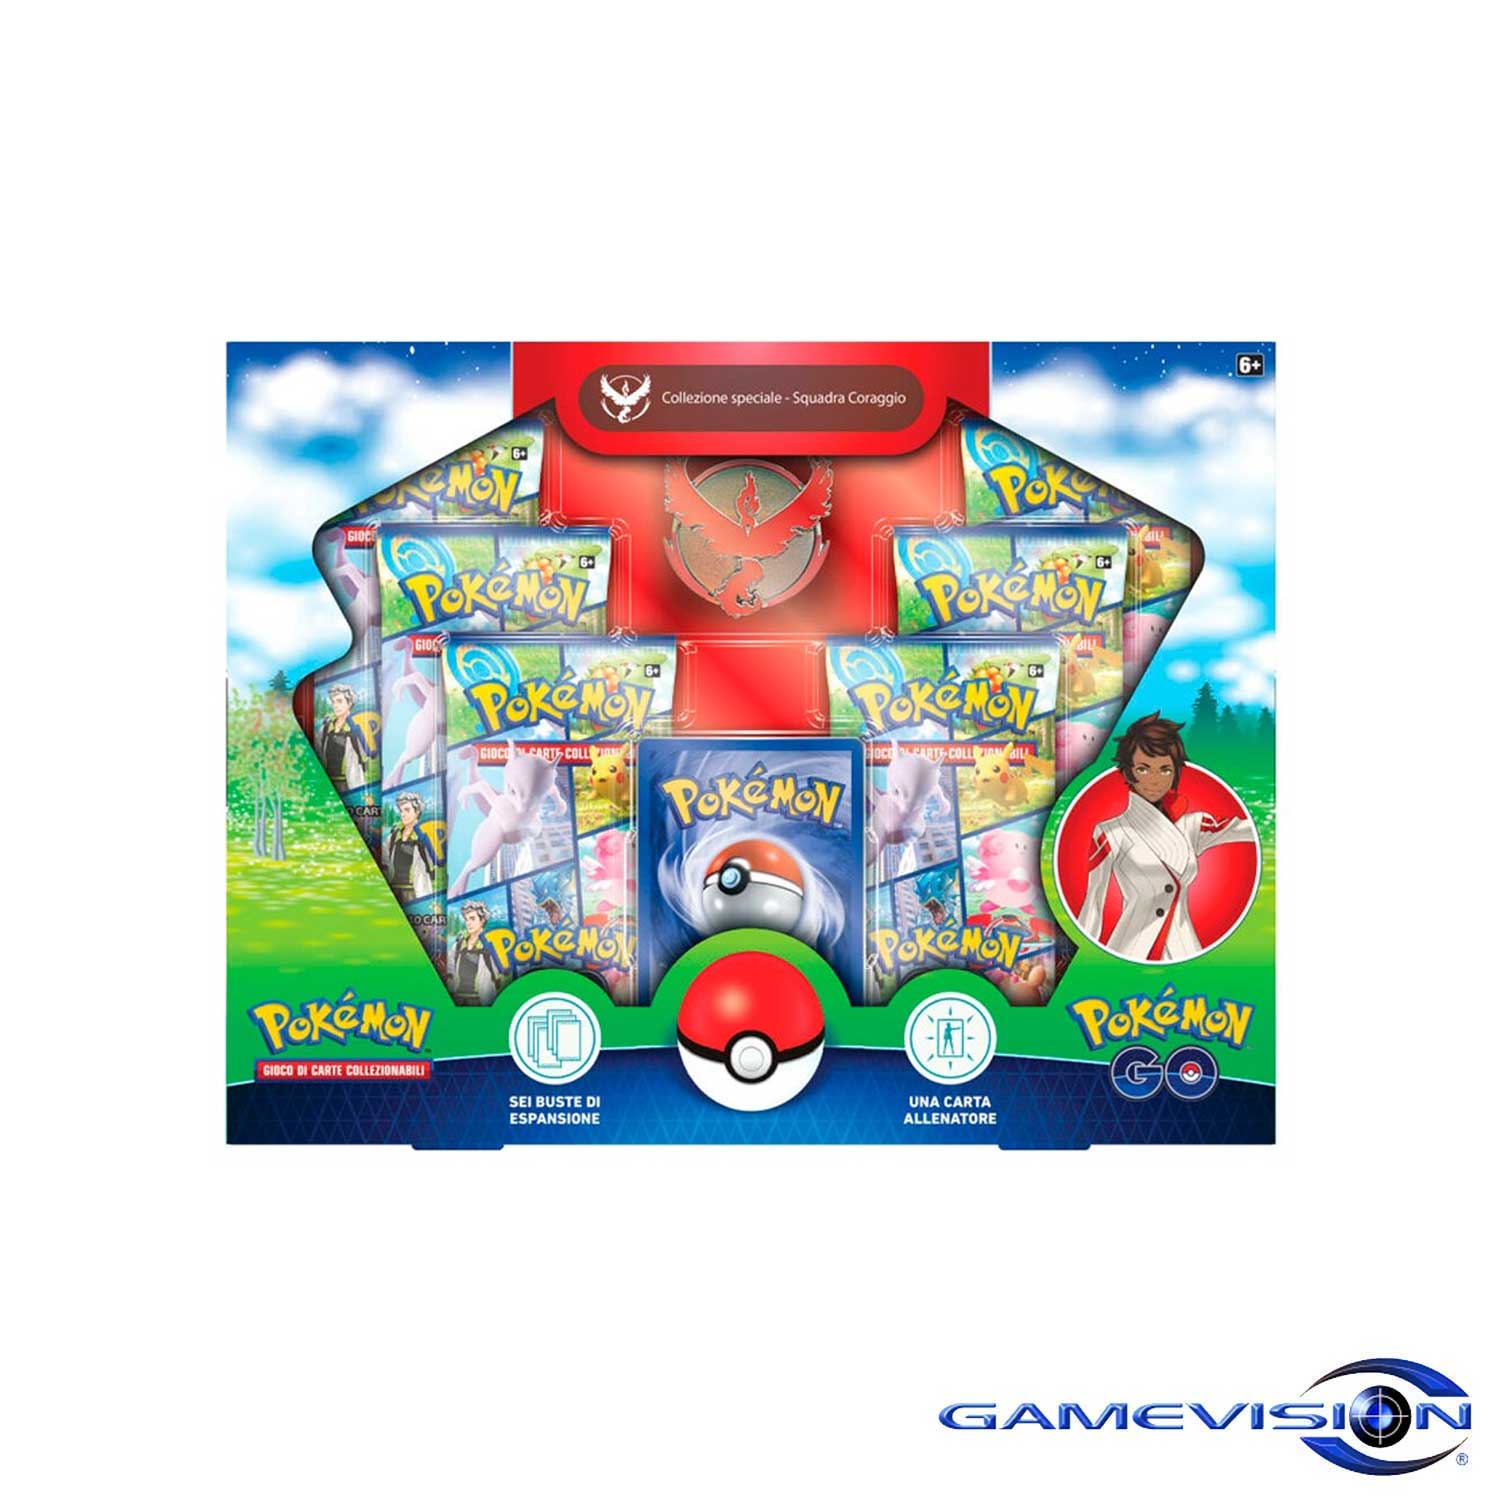 Gamevision-Pokemon-Squadra-Coraggio-Set-Collezione-Speciale-Iperbimbo